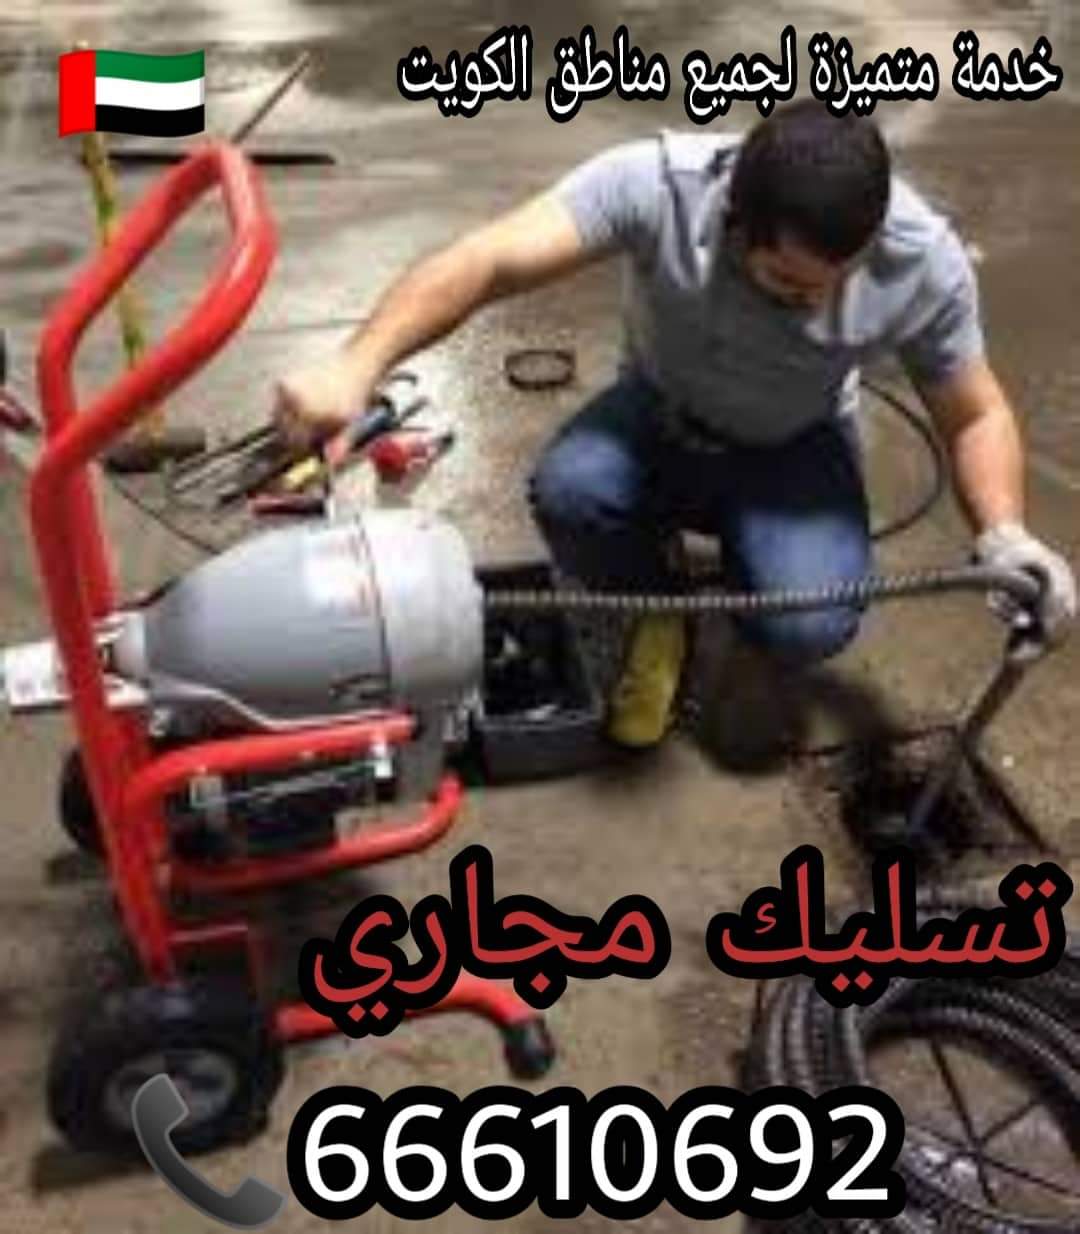 تسليك مجاري الصباحية / 66610692 / صيانة وتركيب ادوات صحية الكويت